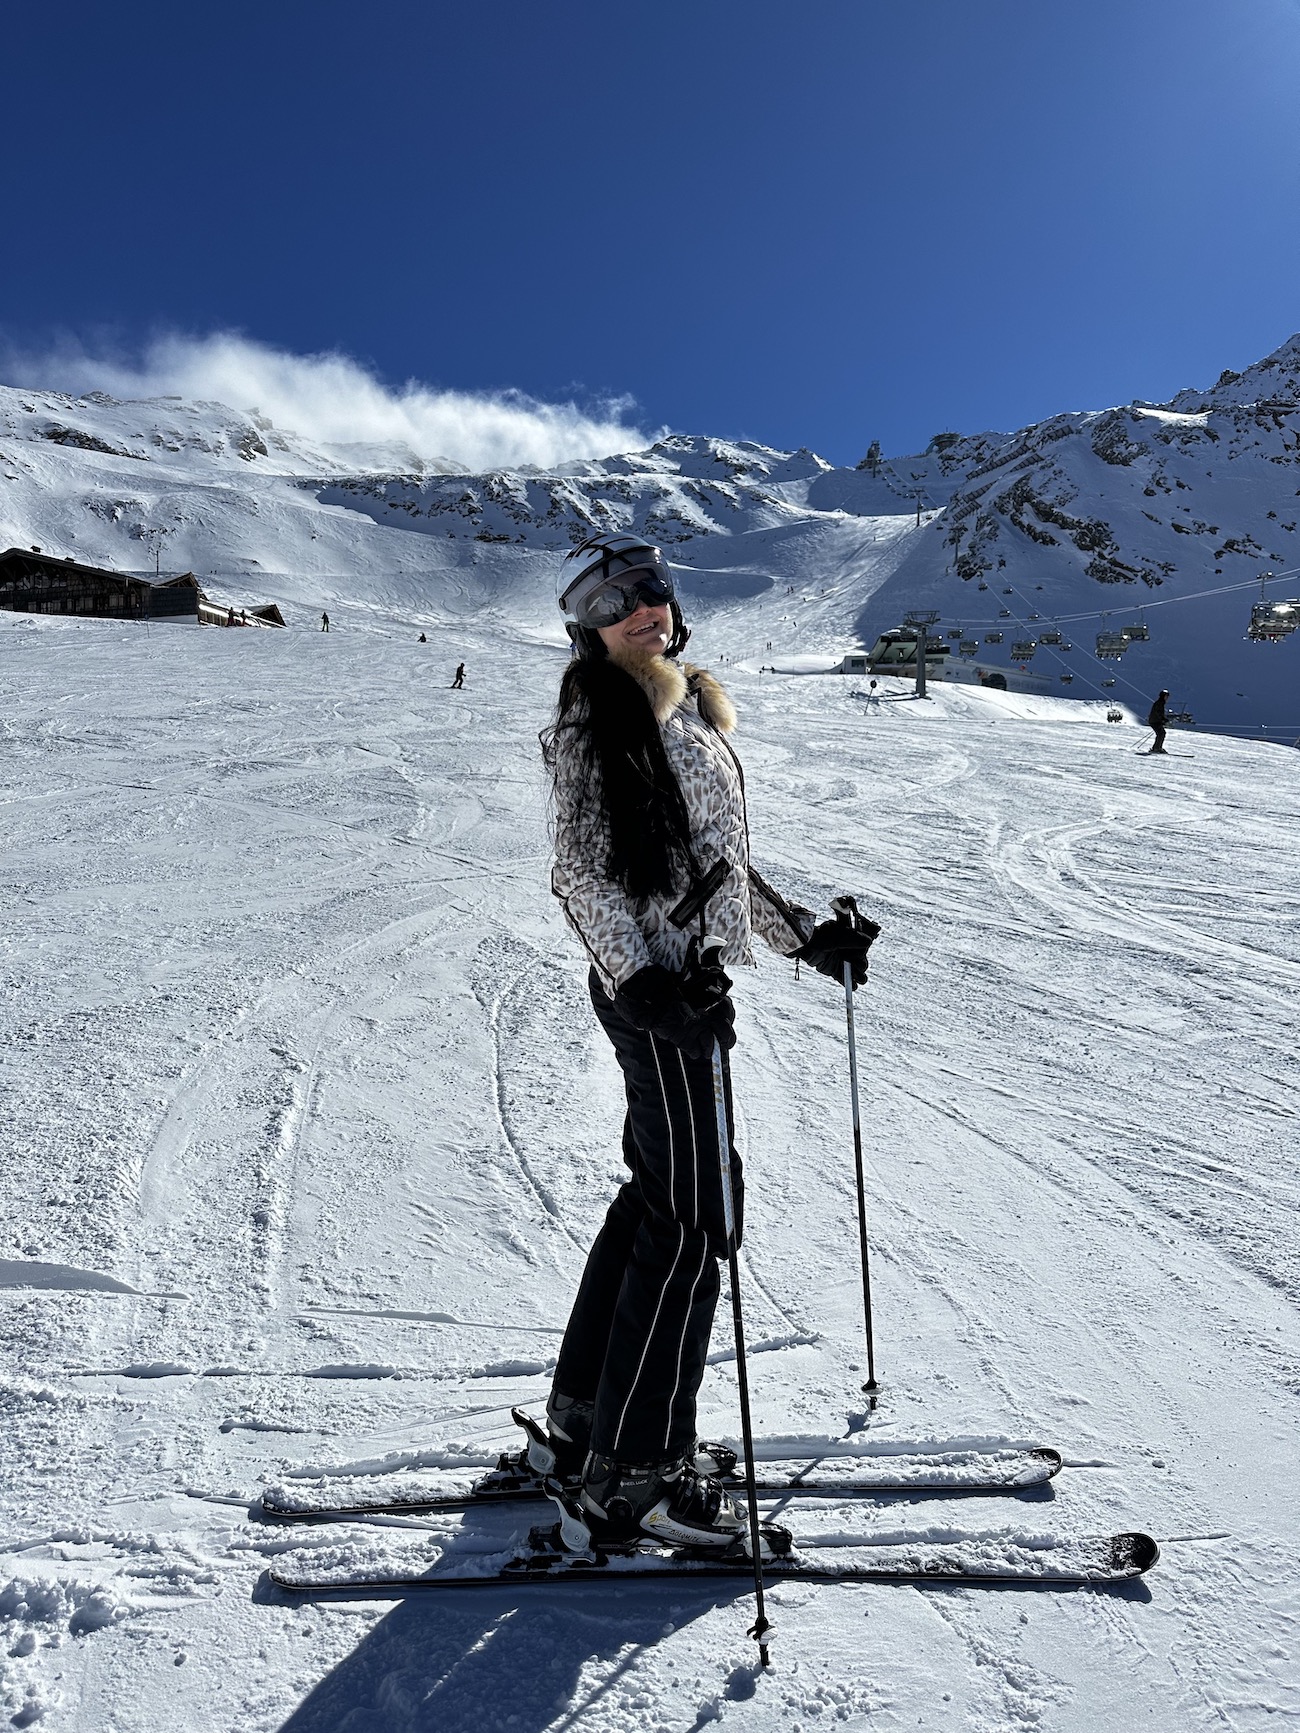 Wintergenuss im Ötztal im ADULTS ONLY Ski- & Wellnessresort Hotel Riml****s